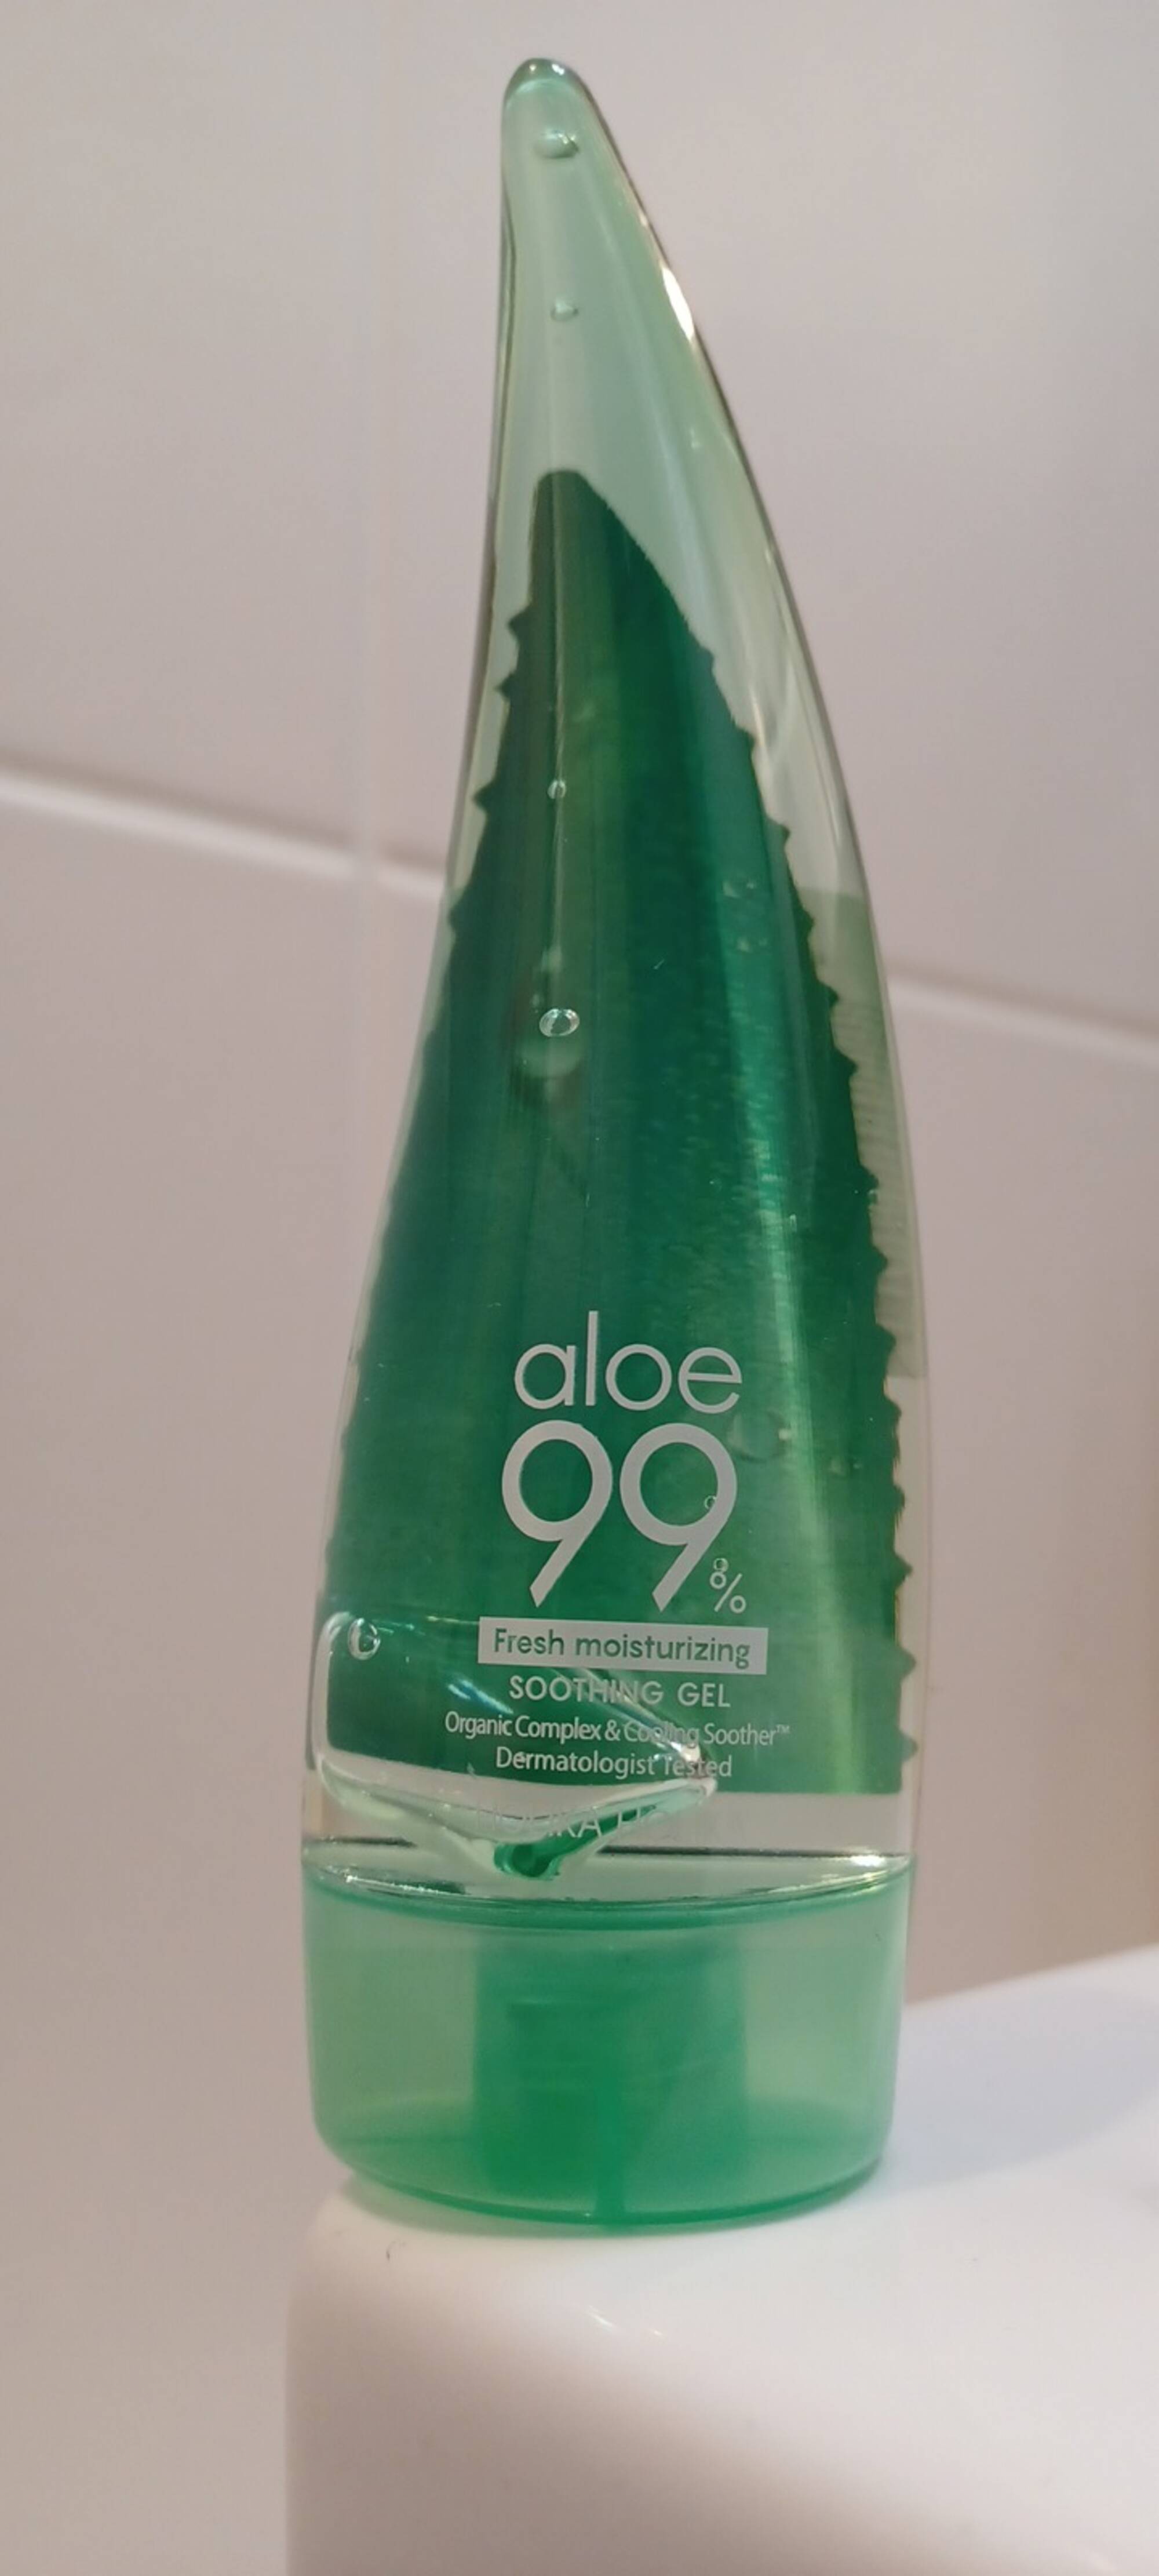 HOLIKA HOLIKA - Aloe 99% - Shoothing gel fresh moisturizing